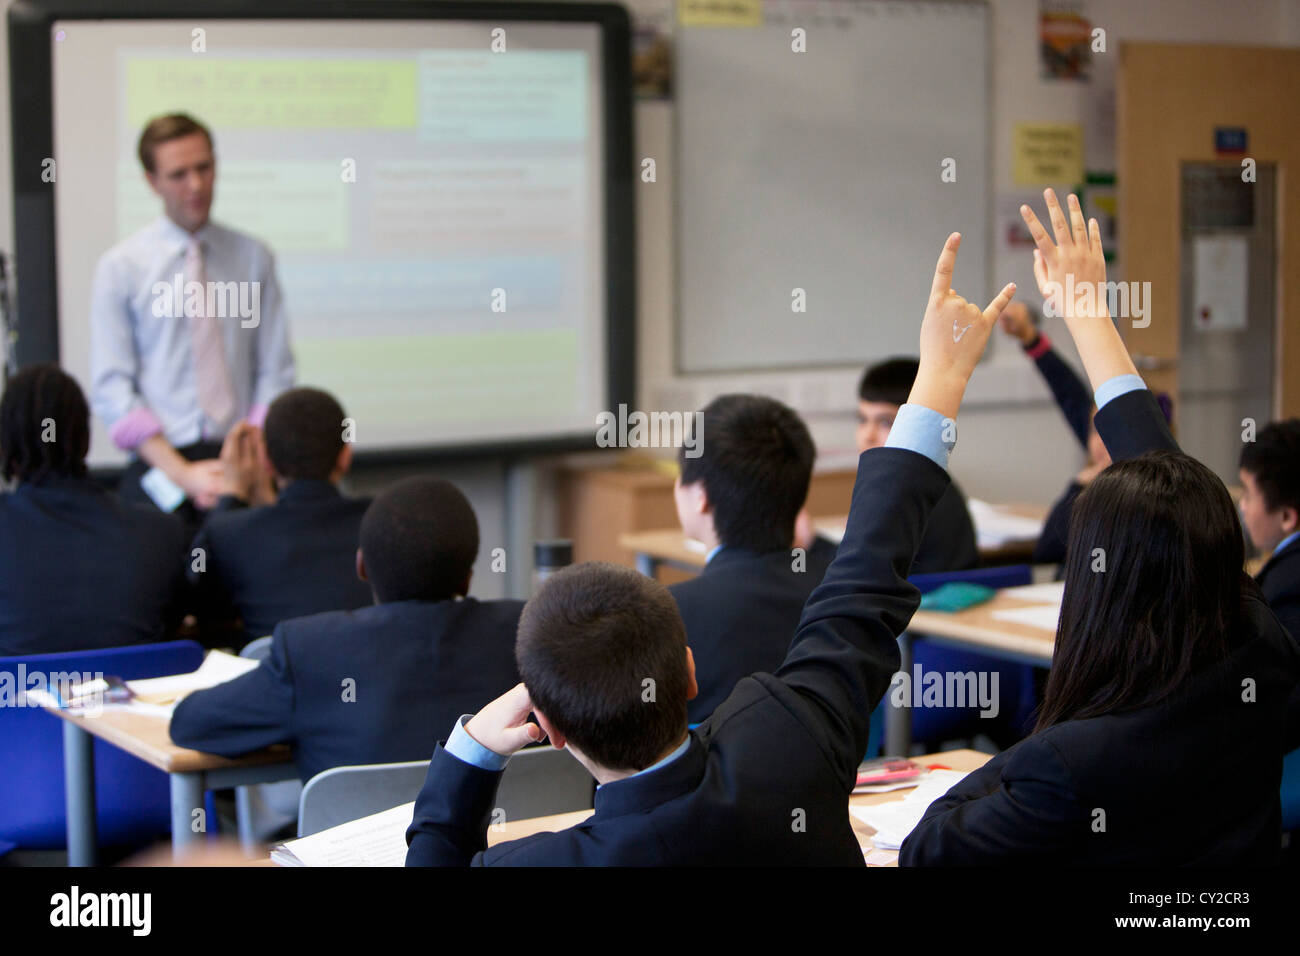 Profesor toma una clase en Pimlico Academy, una escuela secundaria moderna proporcionando educación aspiracional en Londres, Reino Unido. Foto de stock